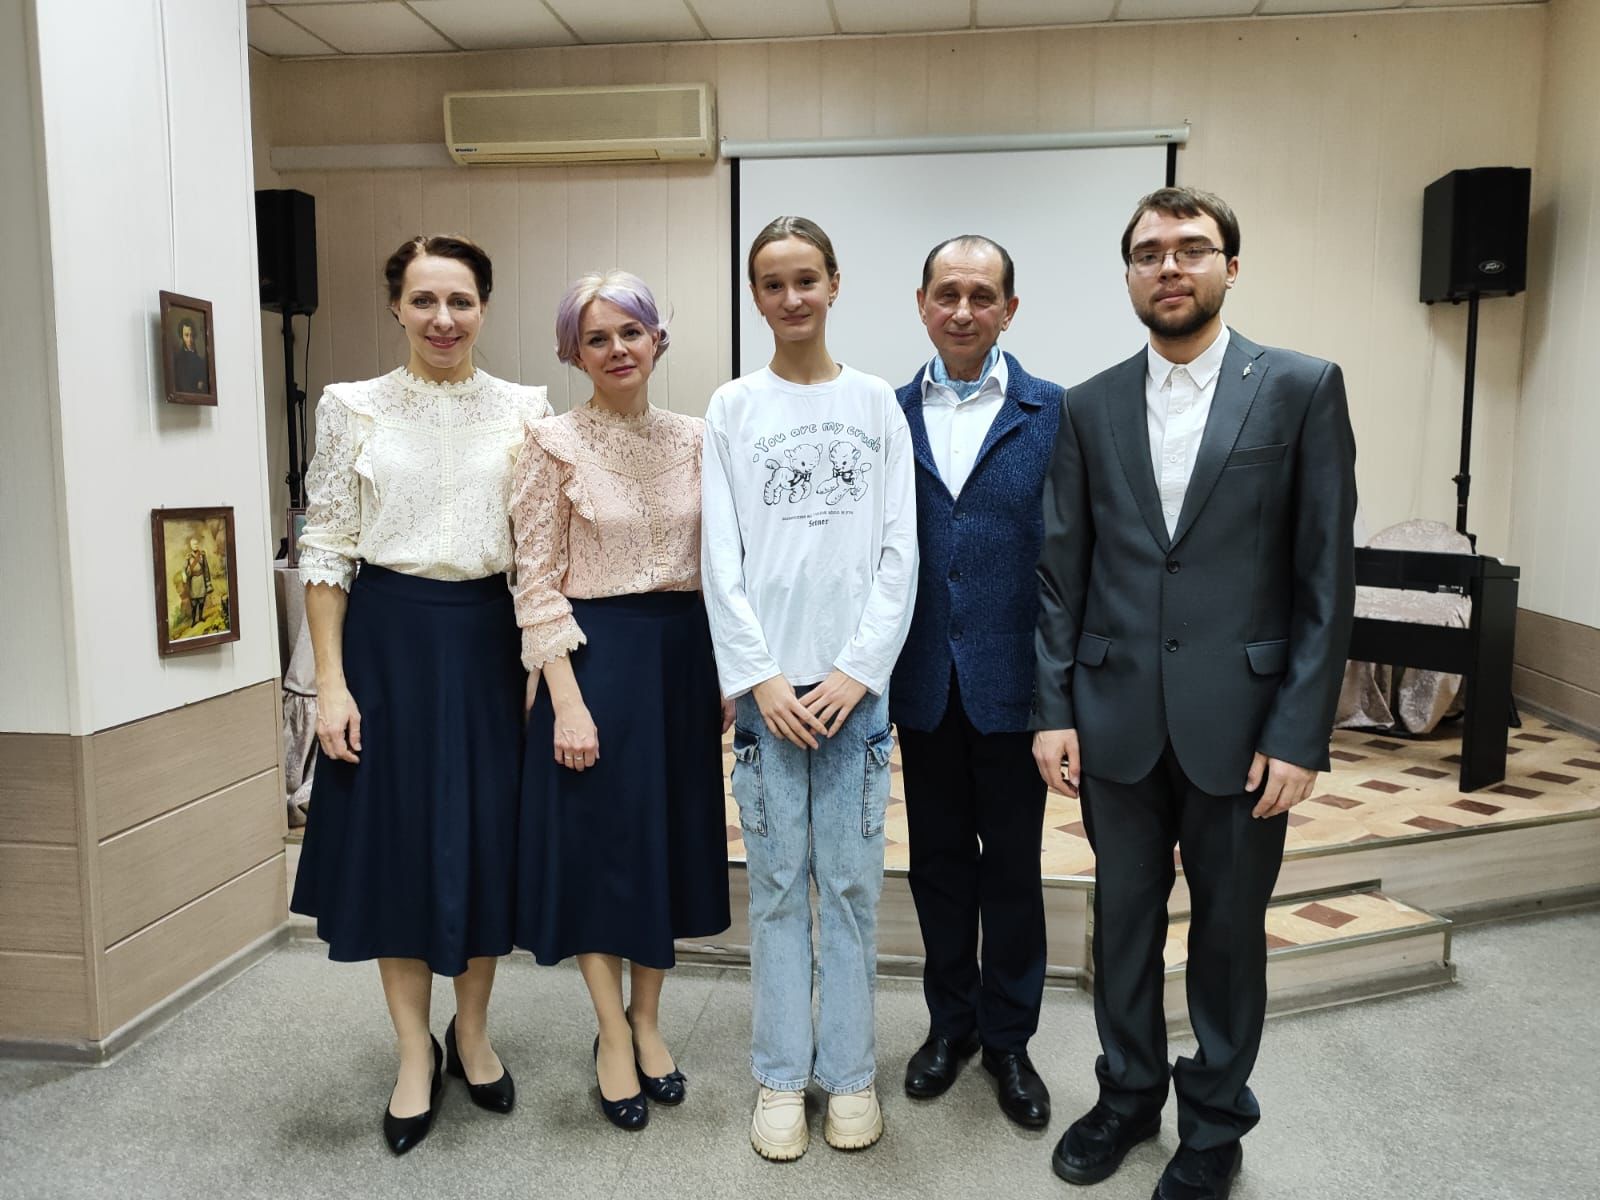 17 ноября 6 «А» и 6 «Б» классы посетили спектакль по знаменитой пьесе А.С. Пушкина «Метель».